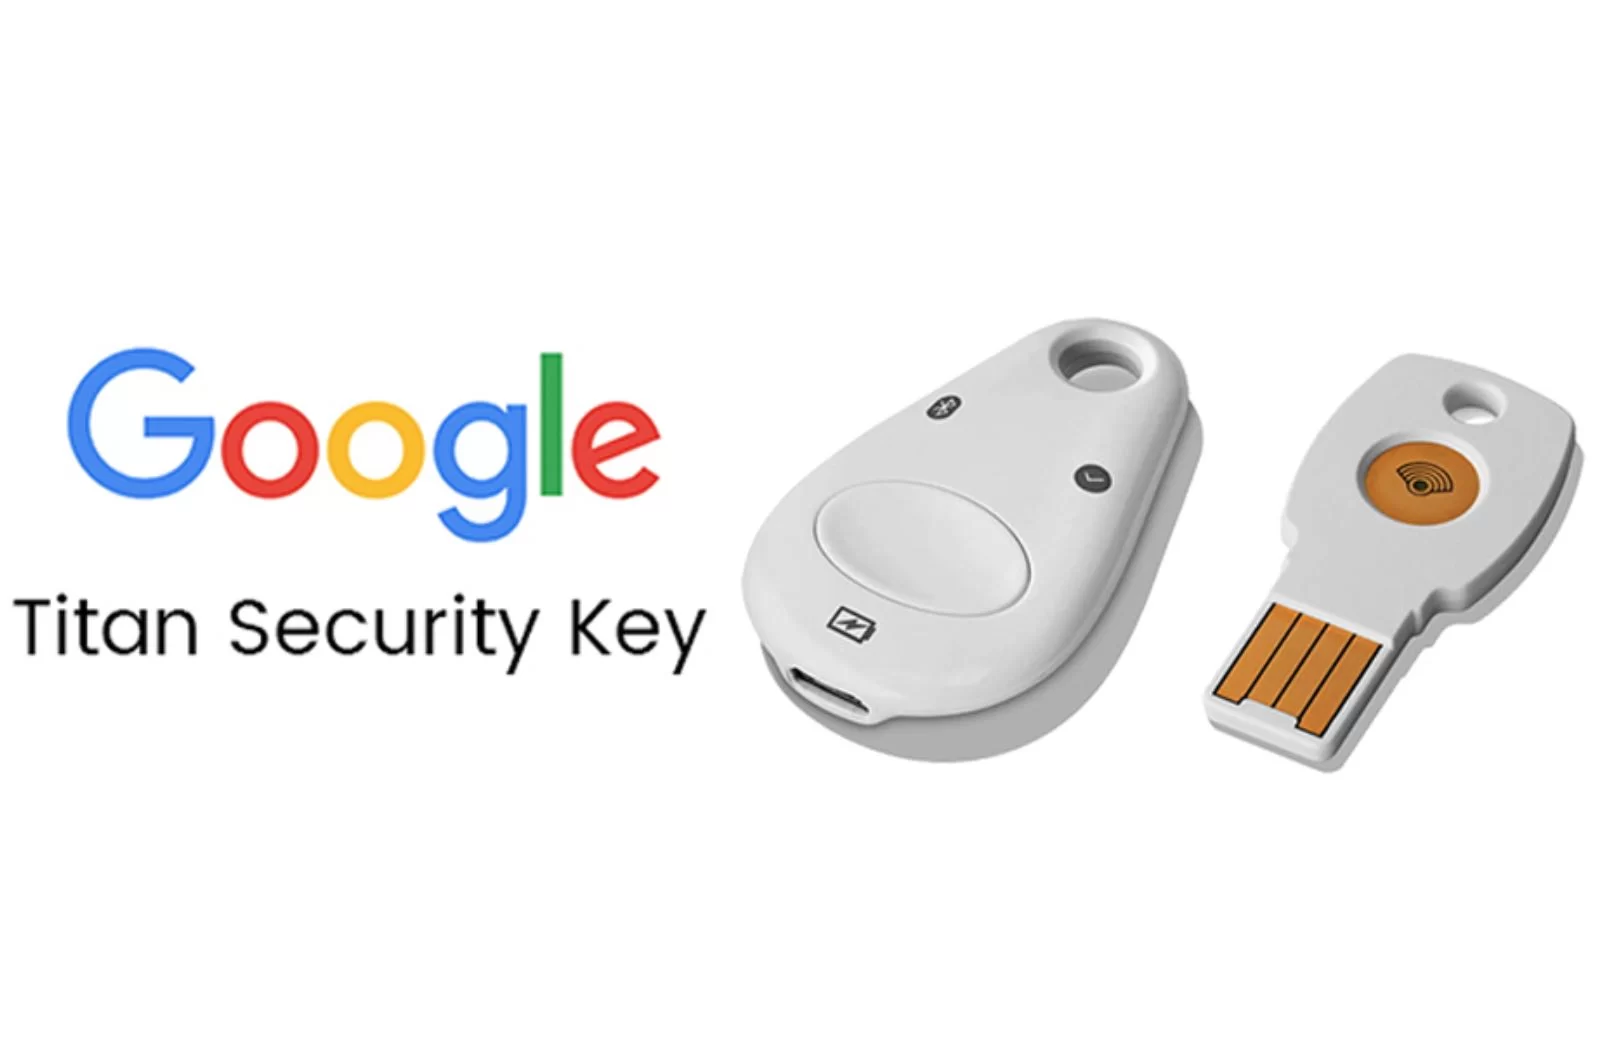 Hardware Security Keys Untuk Perlindungan Online Terbaik